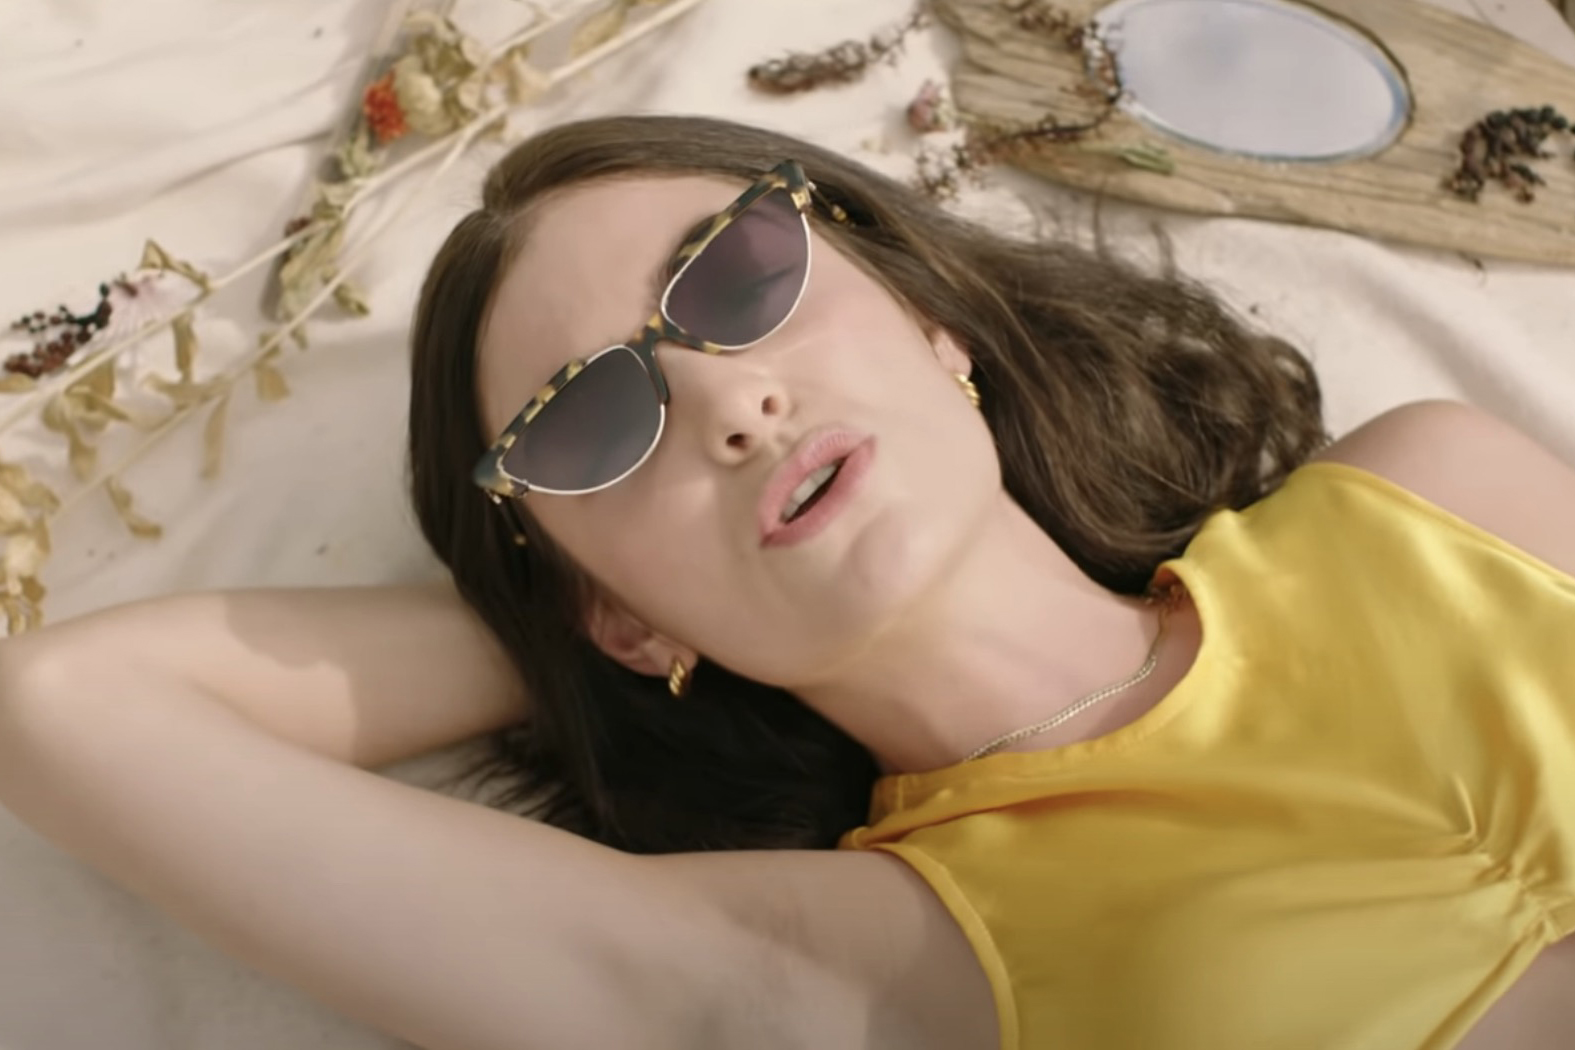 Lorde Surprise lanza nueva canción 'Solar Power' con video musical